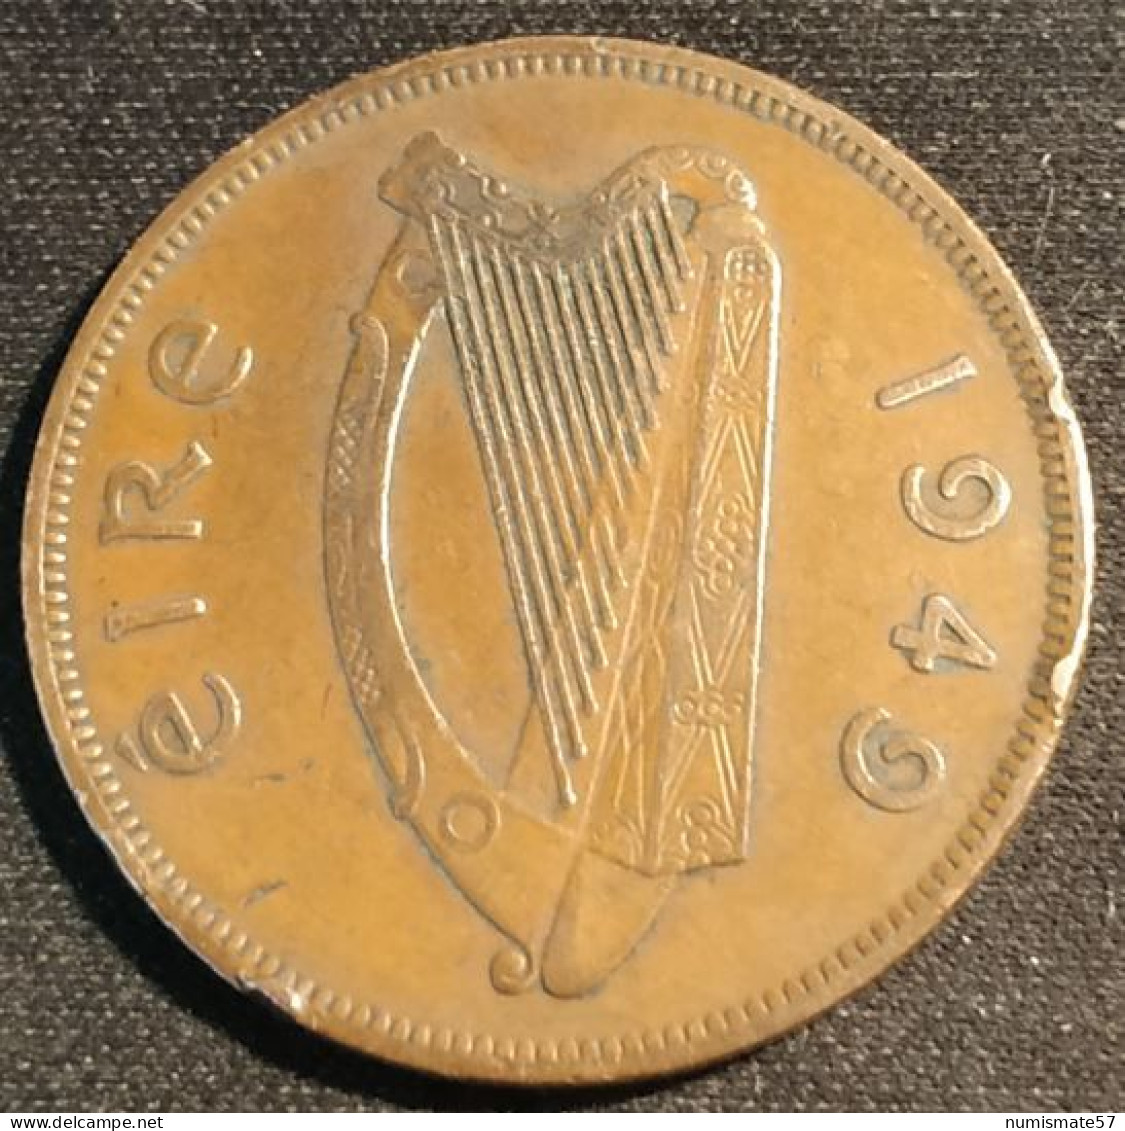 IRLANDE - EIRE - 1 PINGIN 1949 - KM 11 - PENNY - IRELAND - Irlande